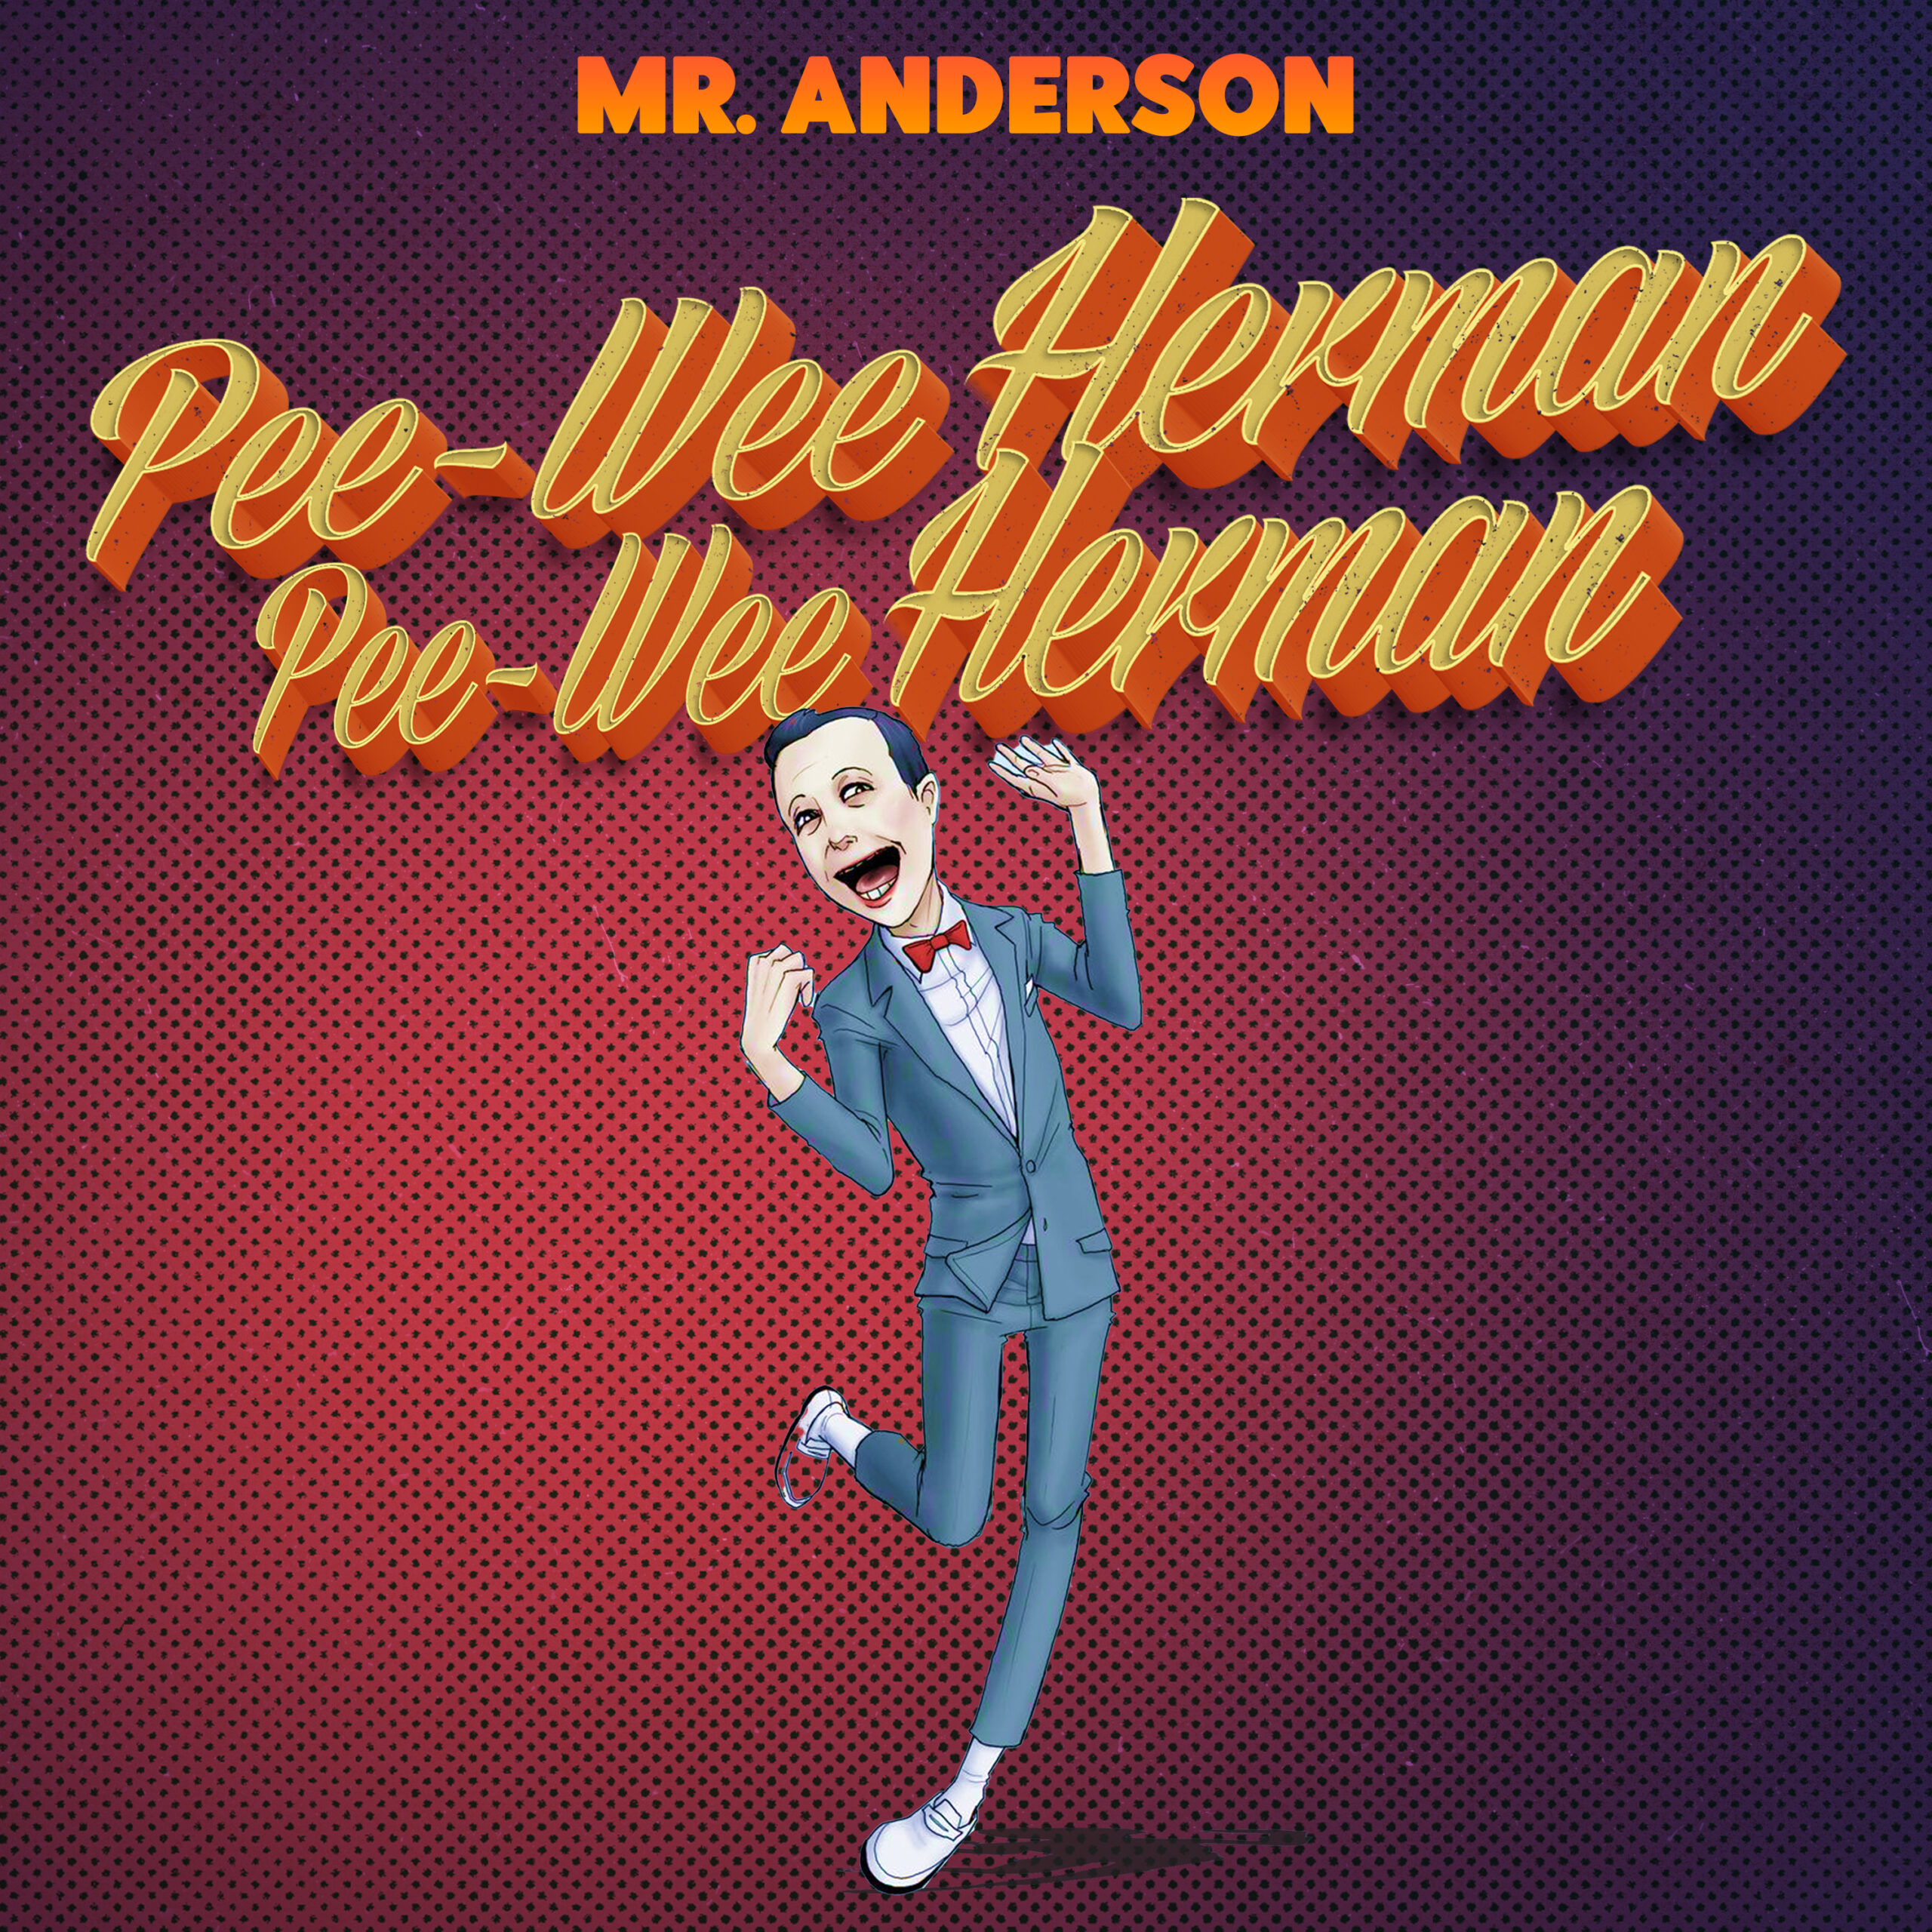 New Music: Mr. Anderson – Pee-wee Herman | @MrAndersonshow